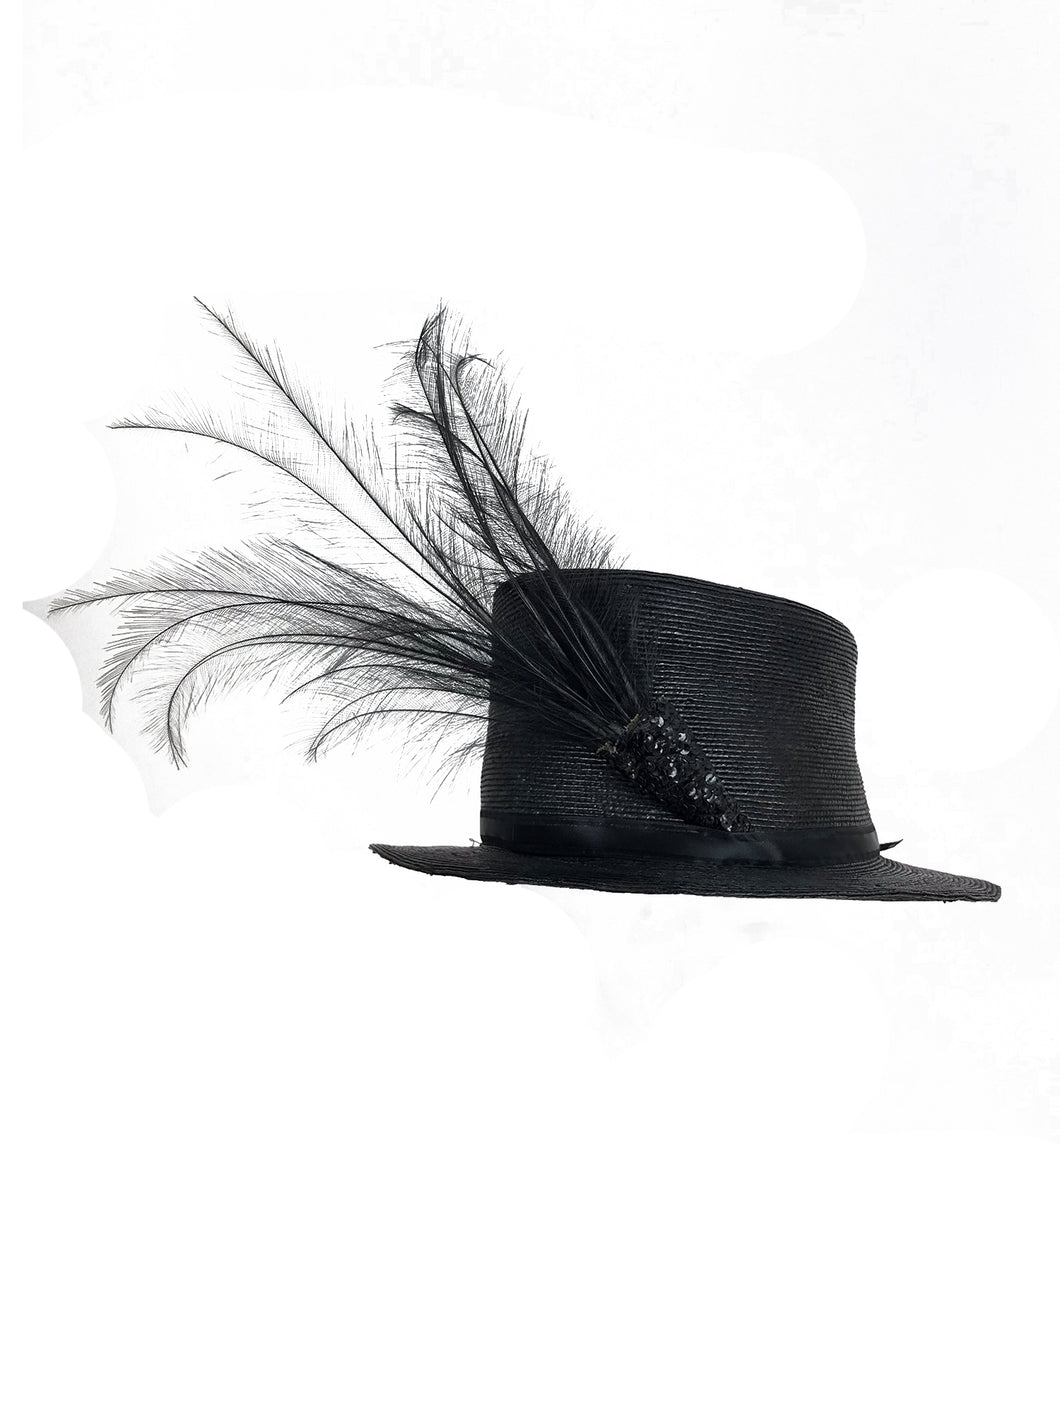 Edwardian Glazed black straw hat with Bird of Paradise feathers